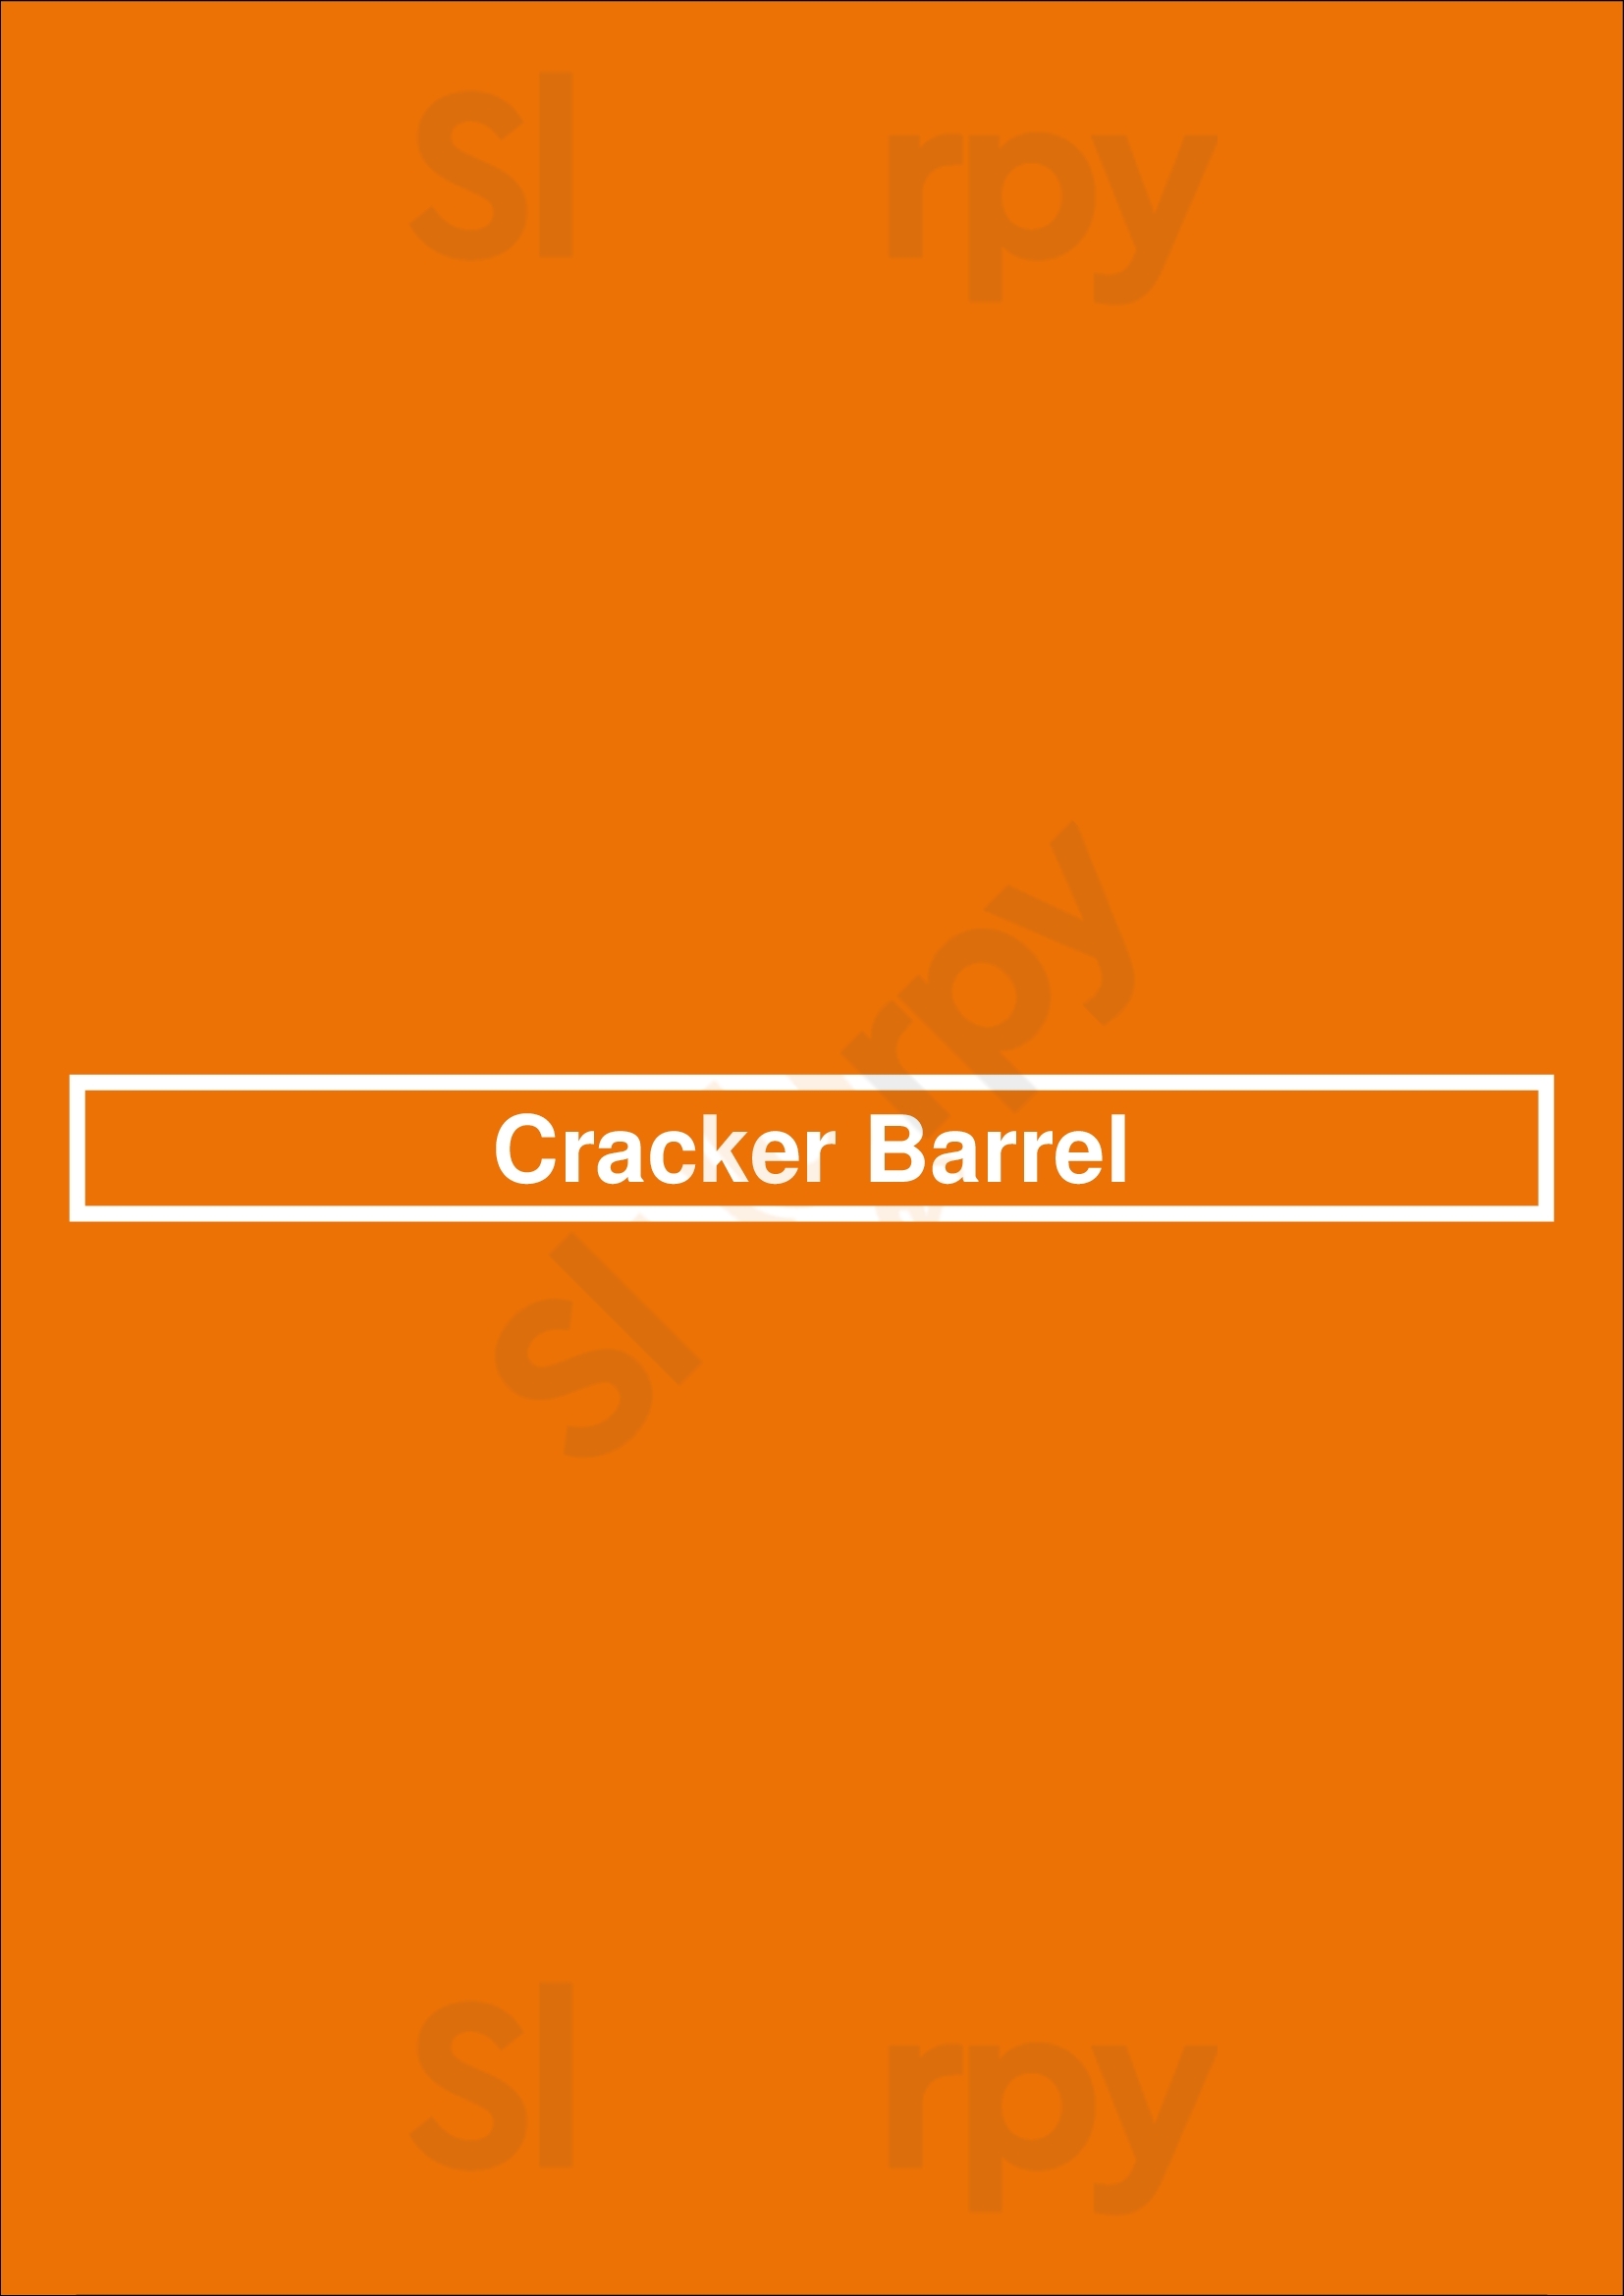 Cracker Barrel Alexandria Menu - 1